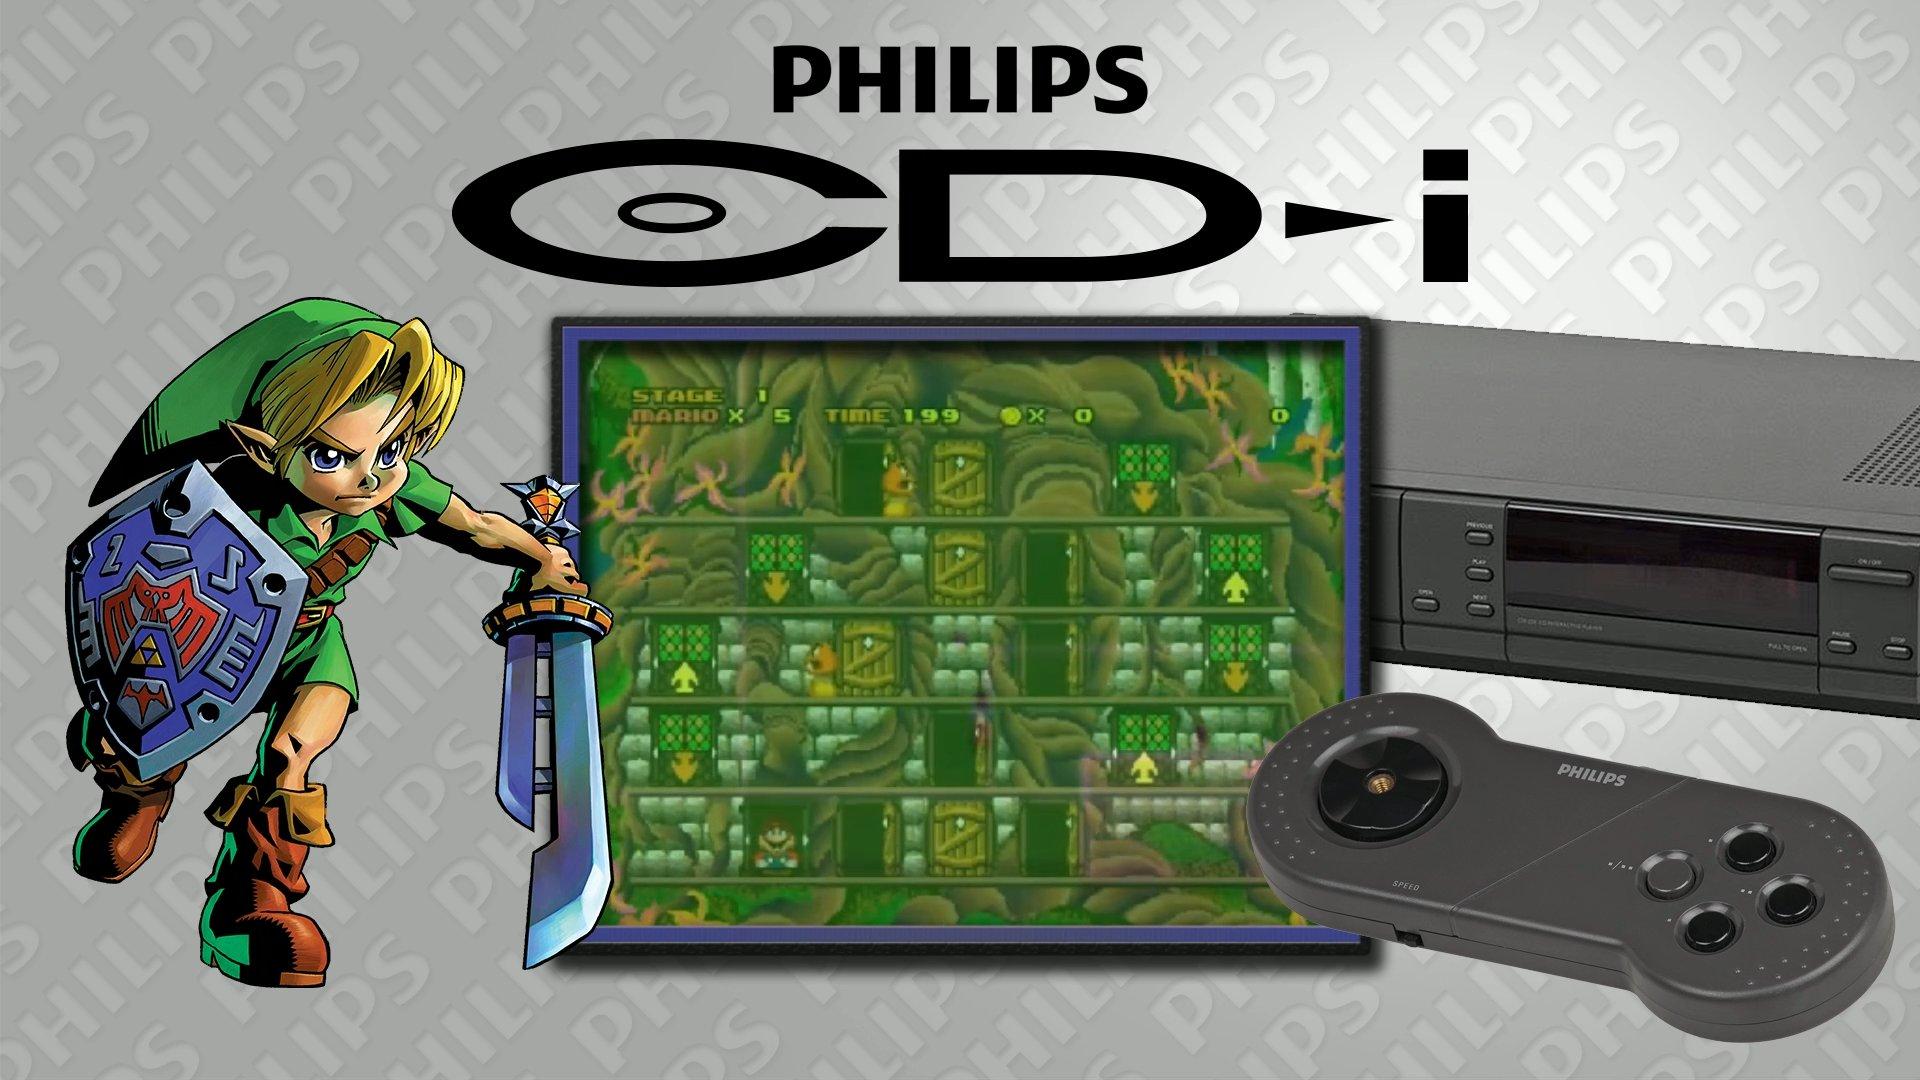 philips cdi console